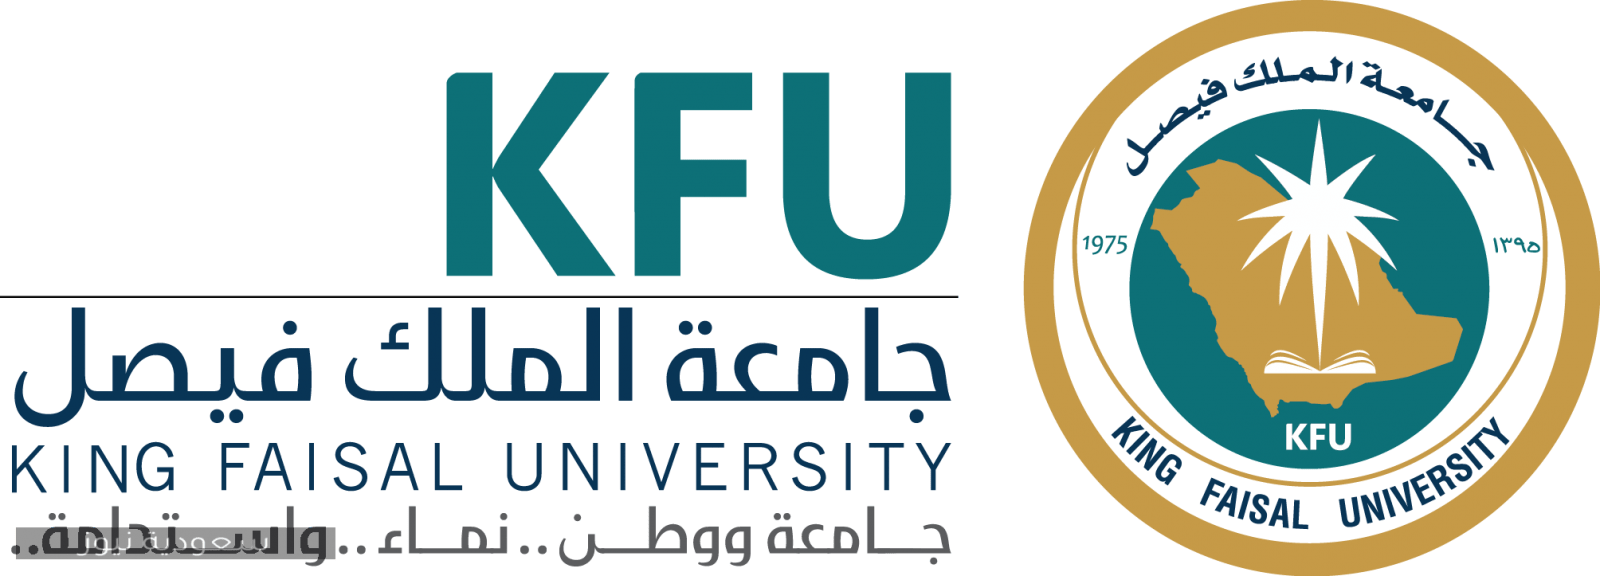 جامعة الملك فيصل الجداول الدراسية